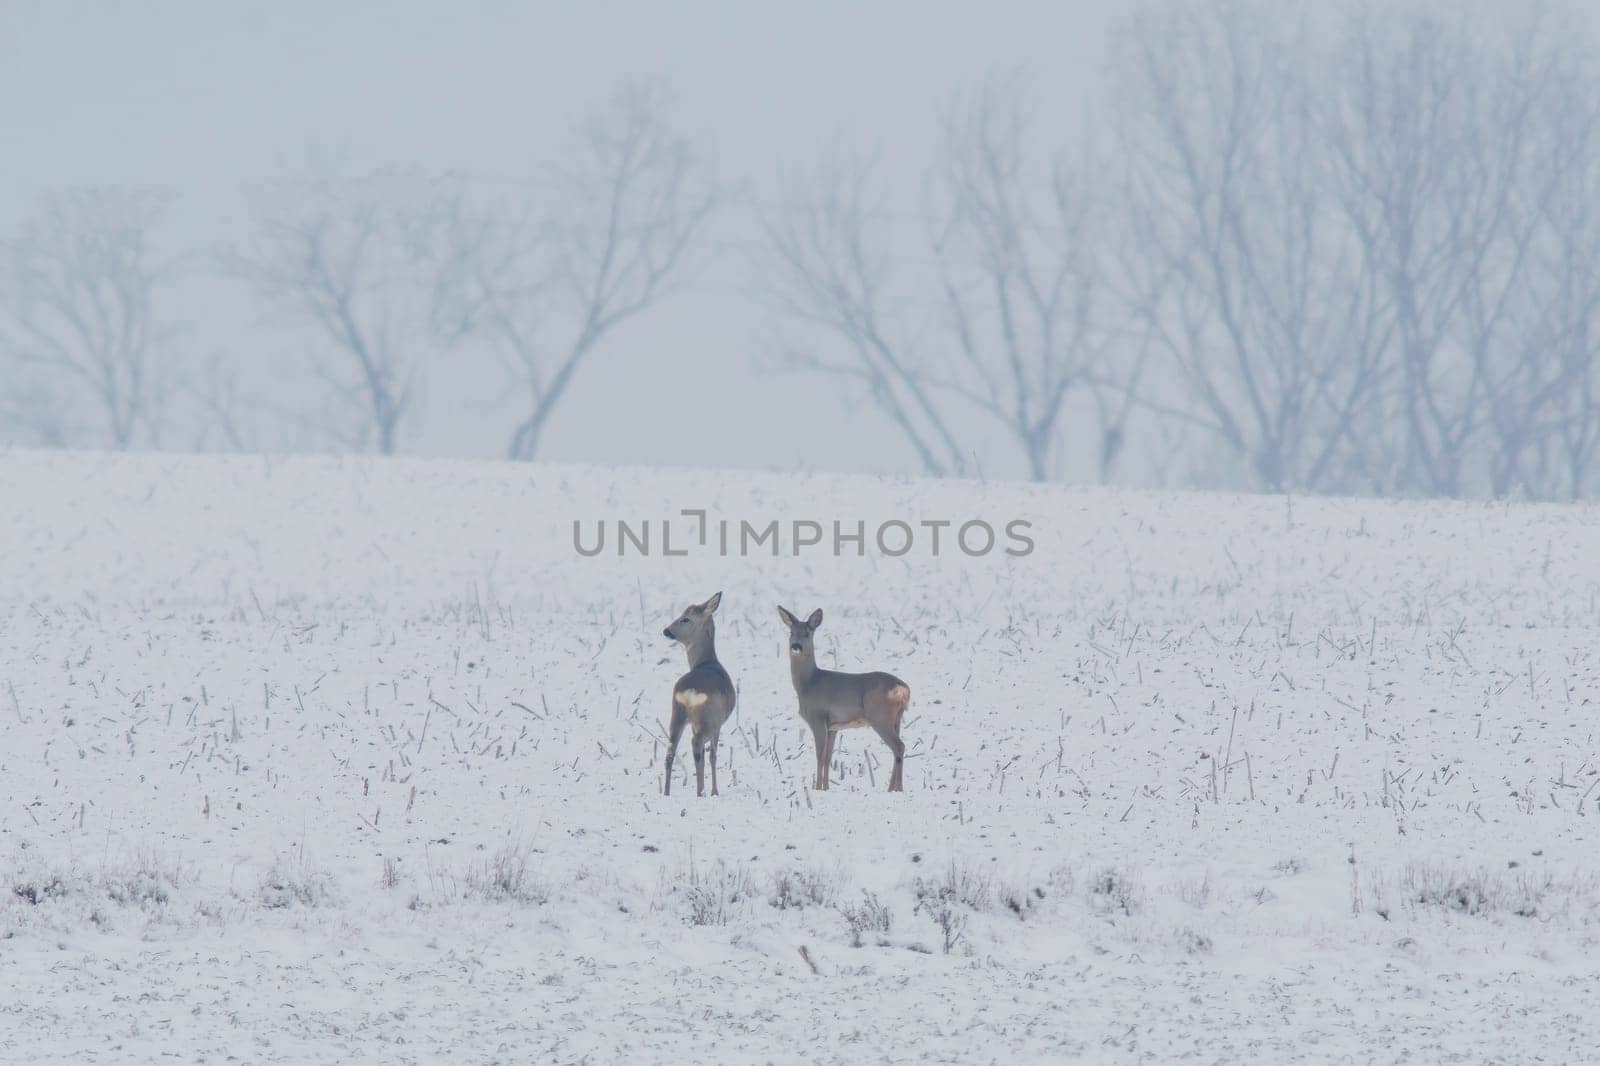 a group of deer in a field in winter